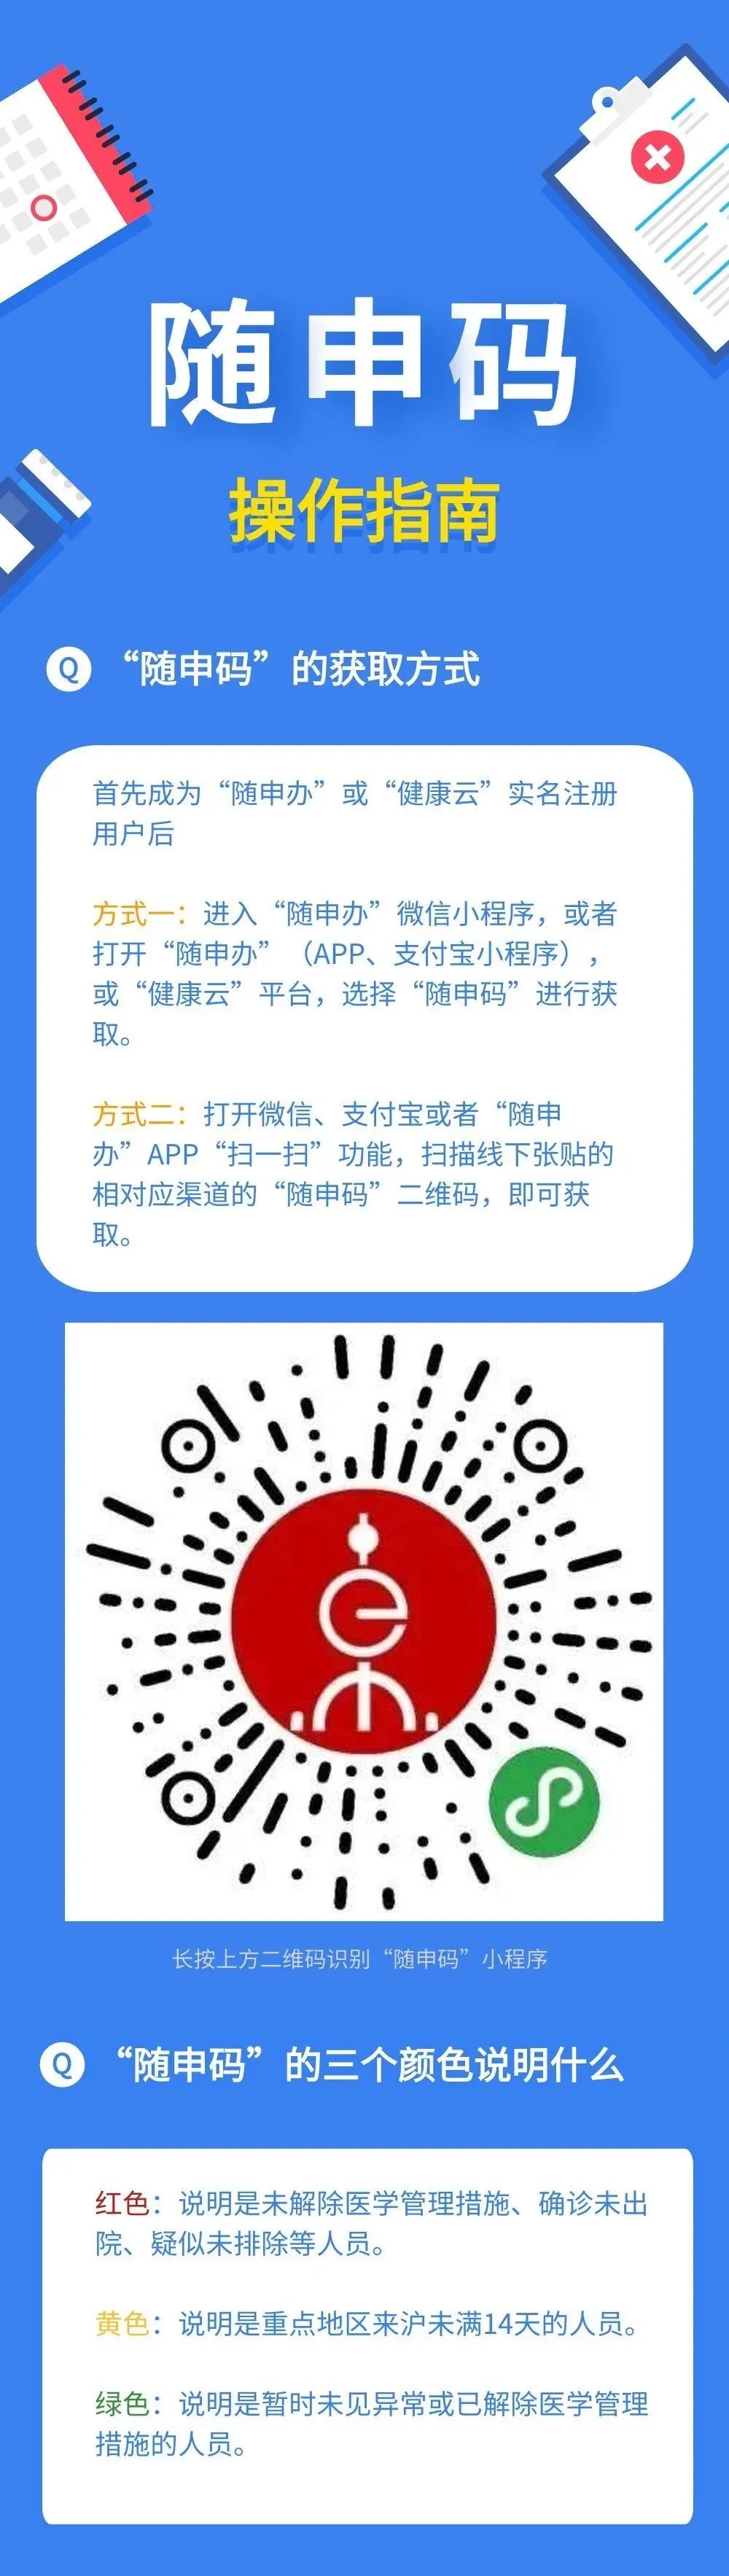 2020年3月13日 所有读者需事先获取"随申码","随申码"依托上海市大